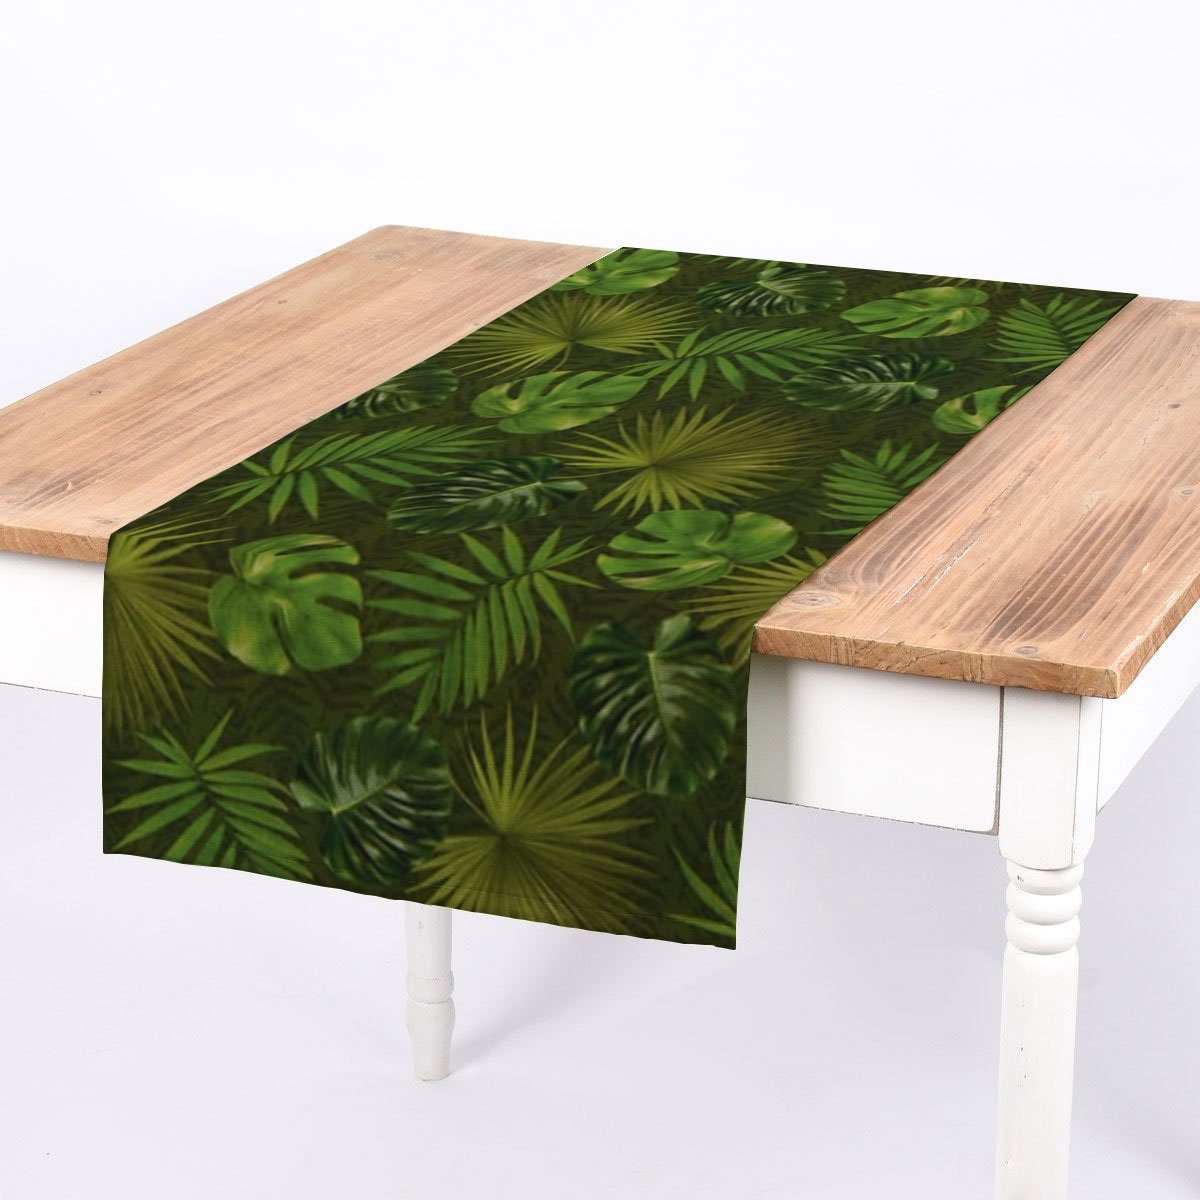 SCHÖNER LEBEN. Tischläufer SCHÖNER LEBEN. Tischläufer Outdoor Palmen Blätter grün 40x160cm, handmade | Tischläufer